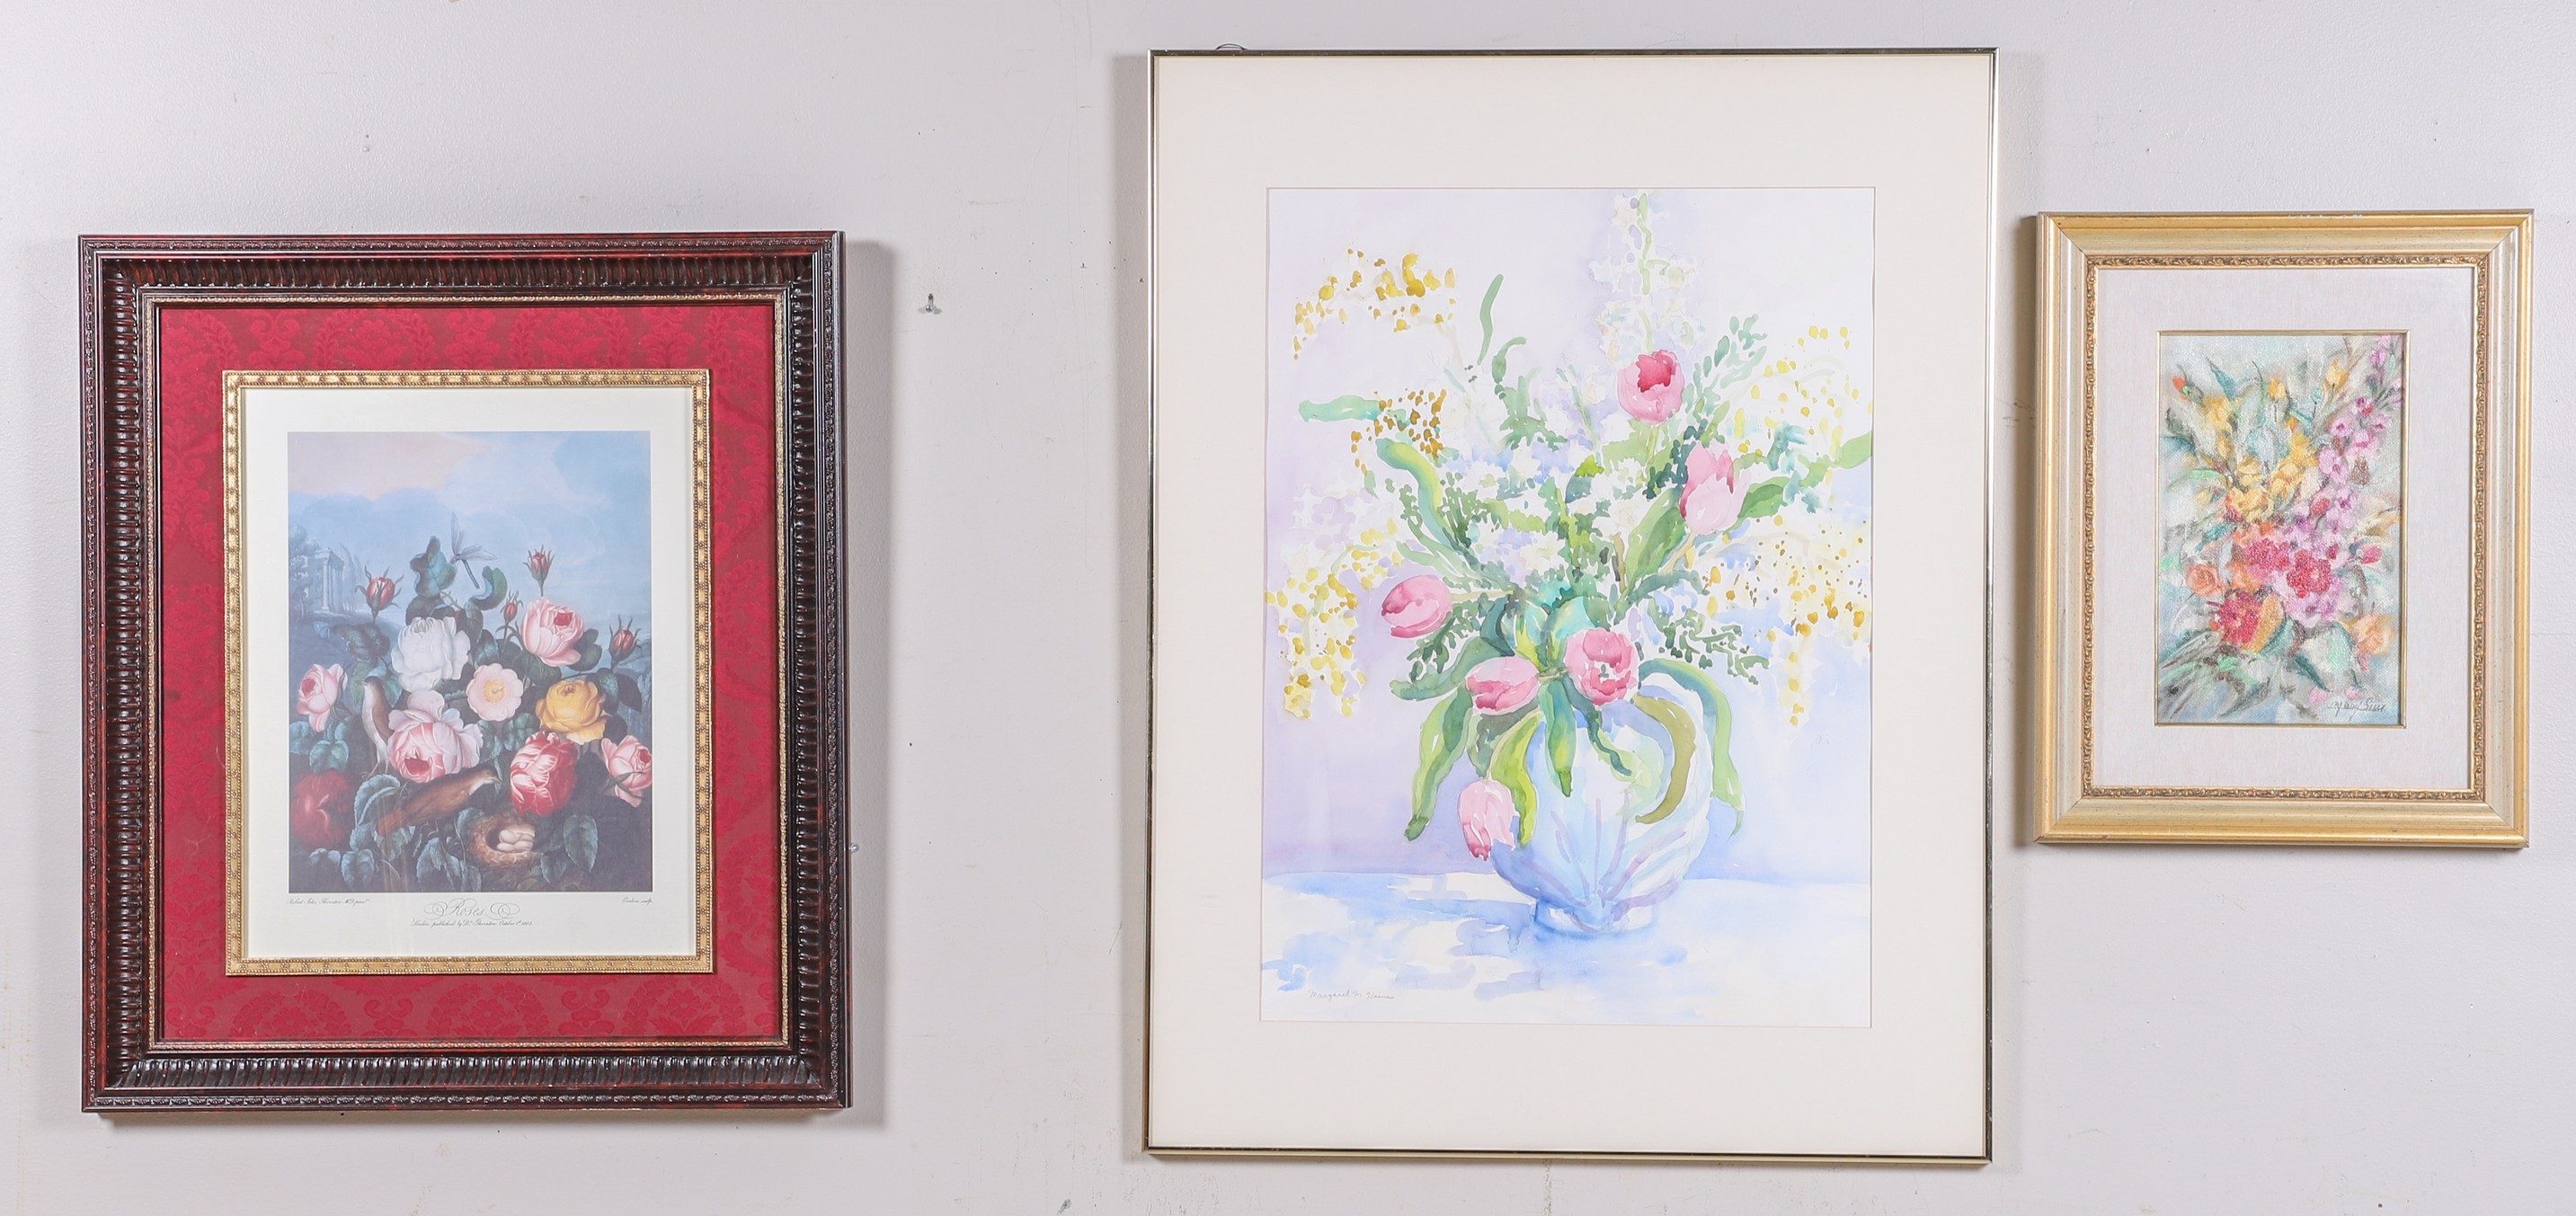 3 Framed Artworks "Spring Bouquet",